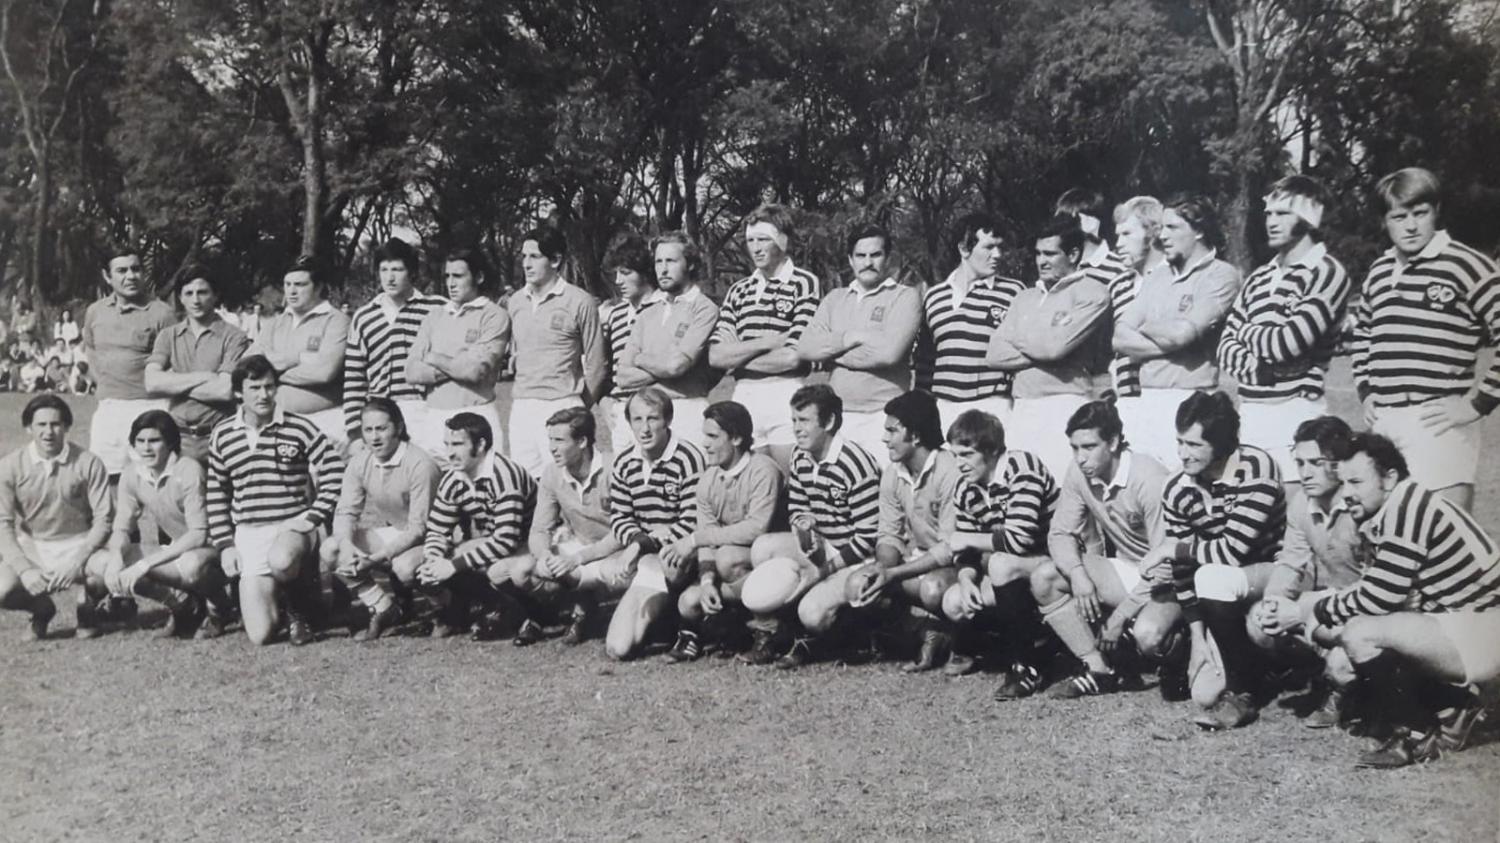 ESTRENO ABSOLUTO. Los jugadores del seleccionado tucumano posan con su flamante naranja junto a los británicos de Oxford-Cambridge en Lawn Tennis. Ese día nació el mayor símbolo del rugby tucumano. 